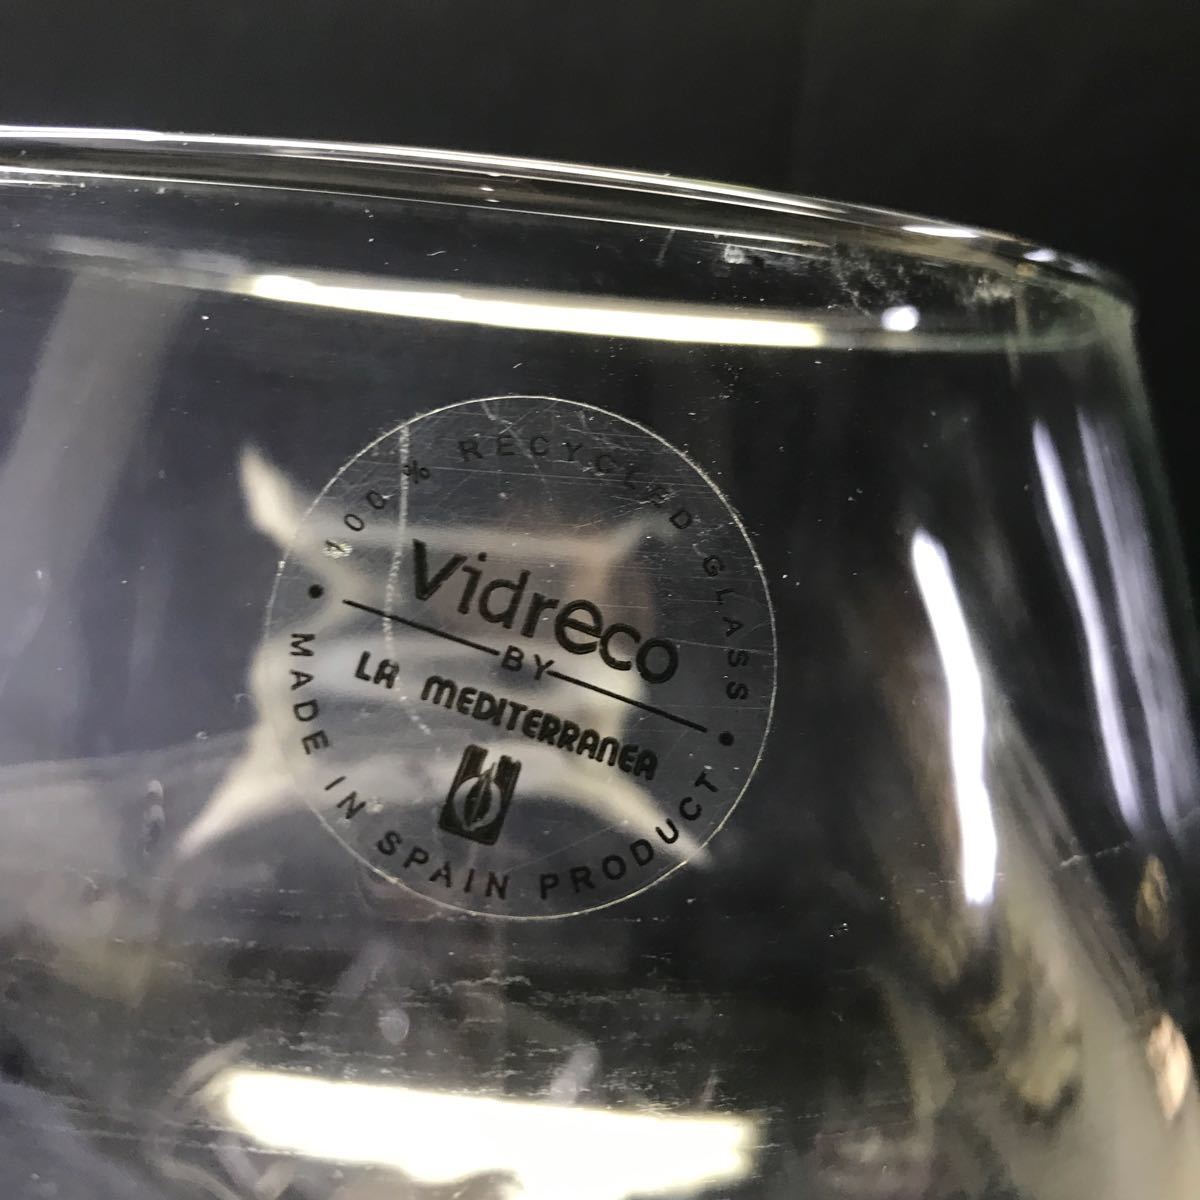 T2588 Vidreco LA MEDITERRANEA 特大 ブランデーグラス ワイングラス スペイン製 ガラス製 ビンテージ 検索）ゆうたろうの画像2